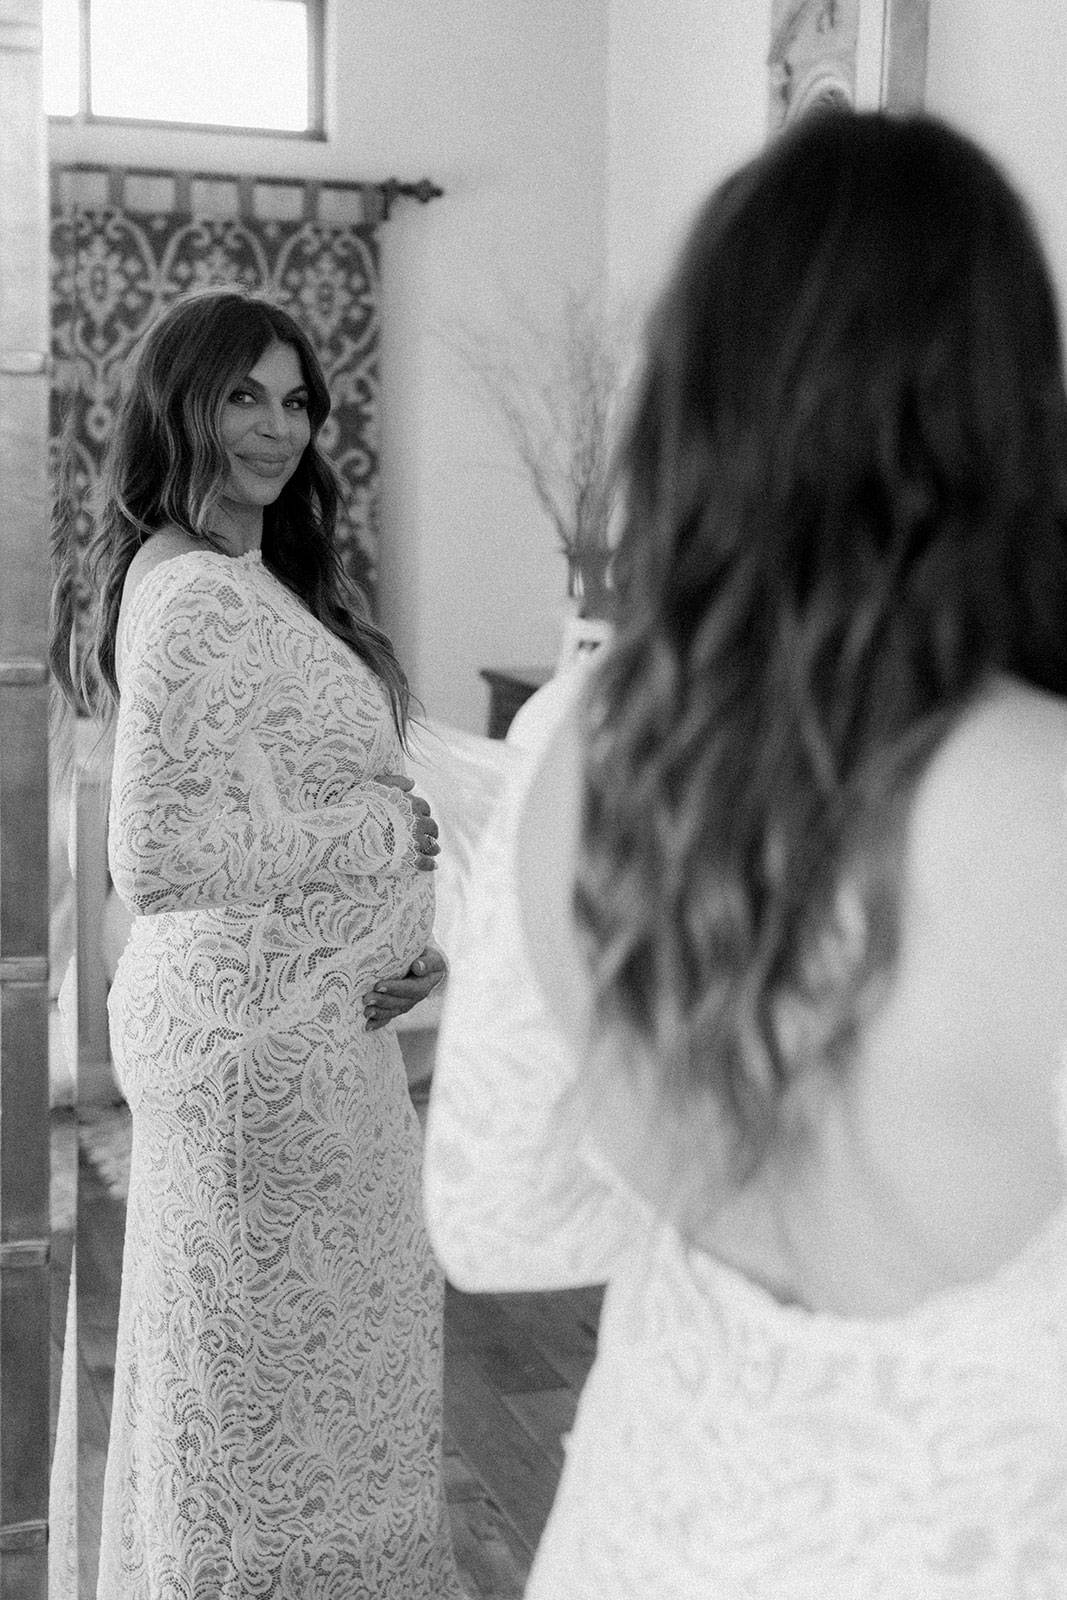 Die Braut schaut in den Spiegel und hält den Babybauch